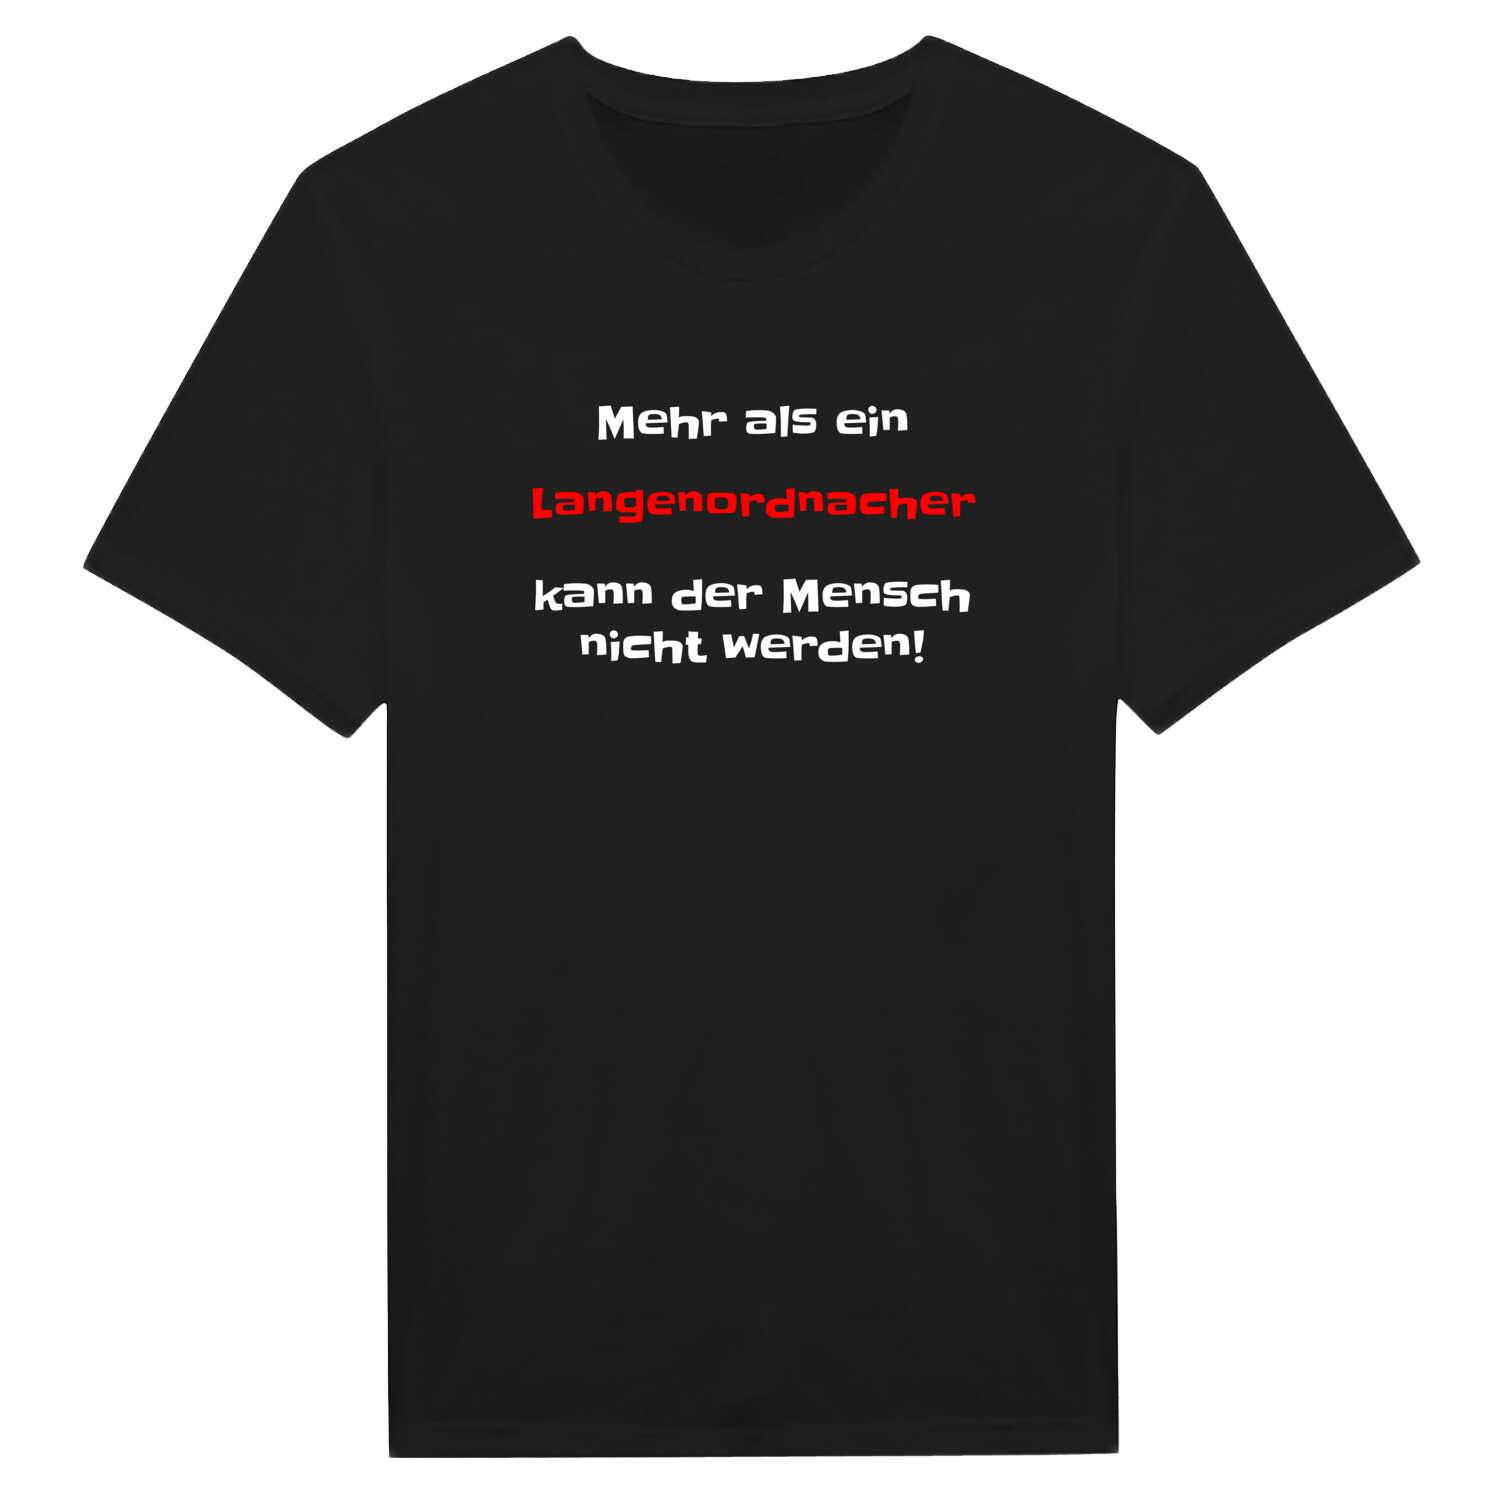 Langenordnach T-Shirt »Mehr als ein«